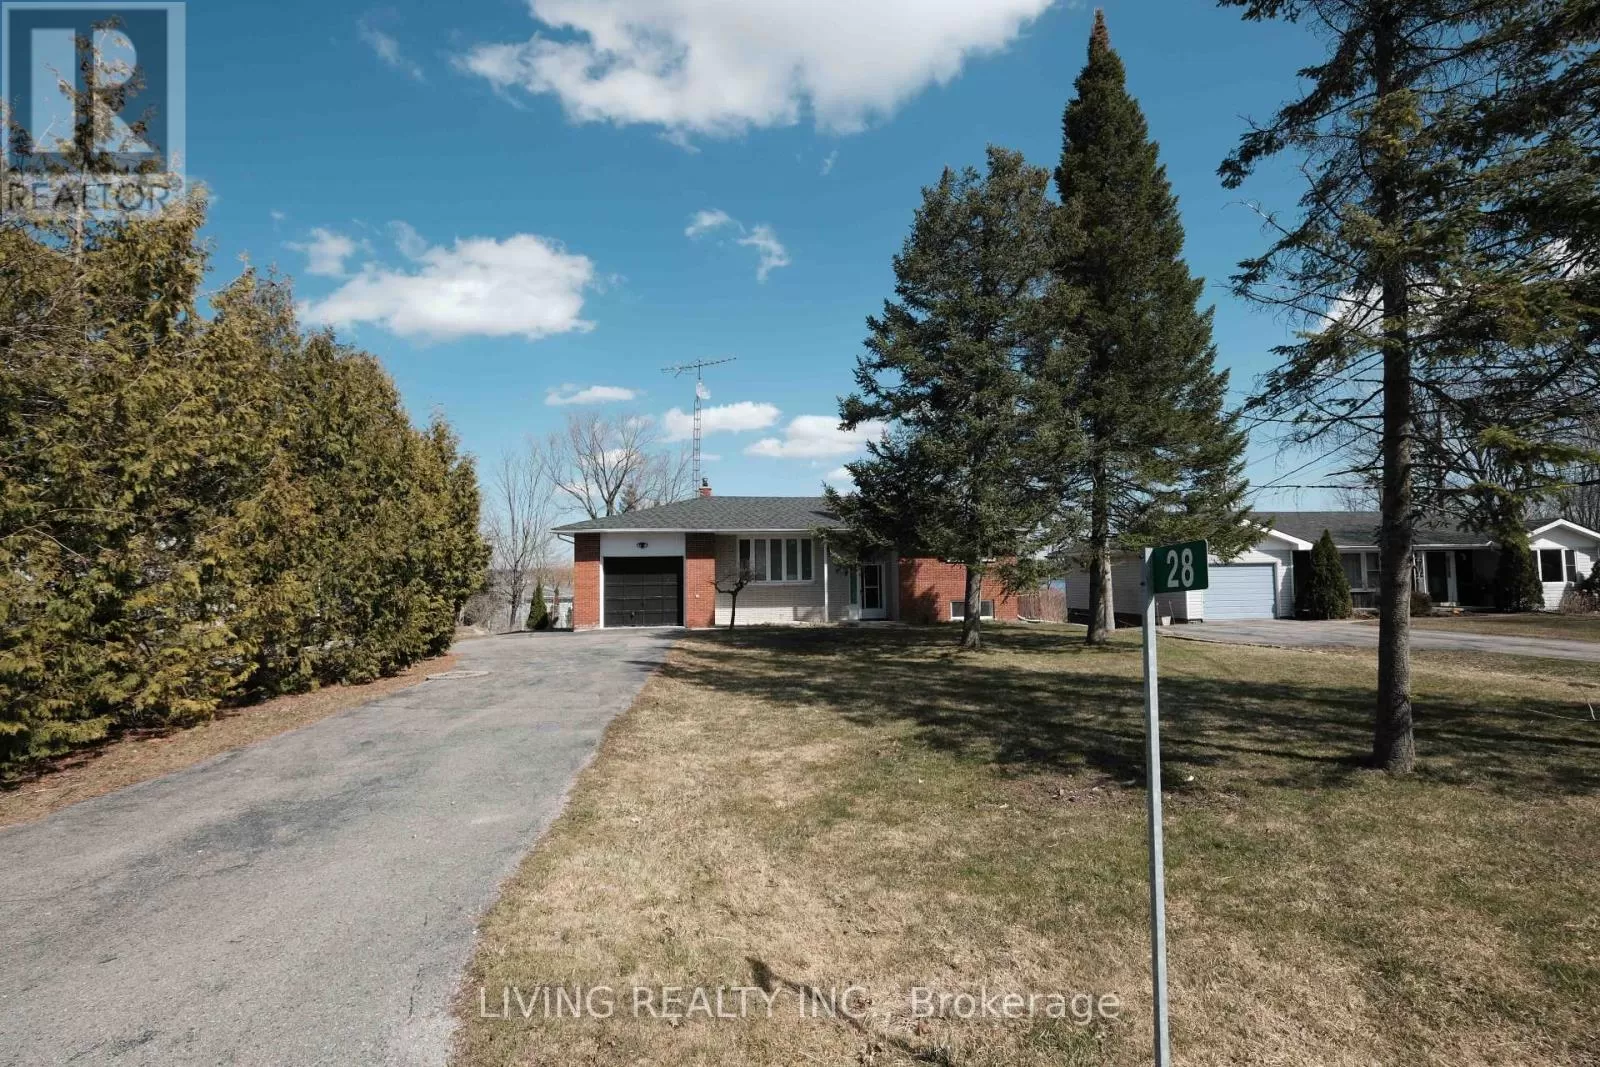 House for rent: 28 Butternut Drive, Kawartha Lakes, Ontario K9V 4R1